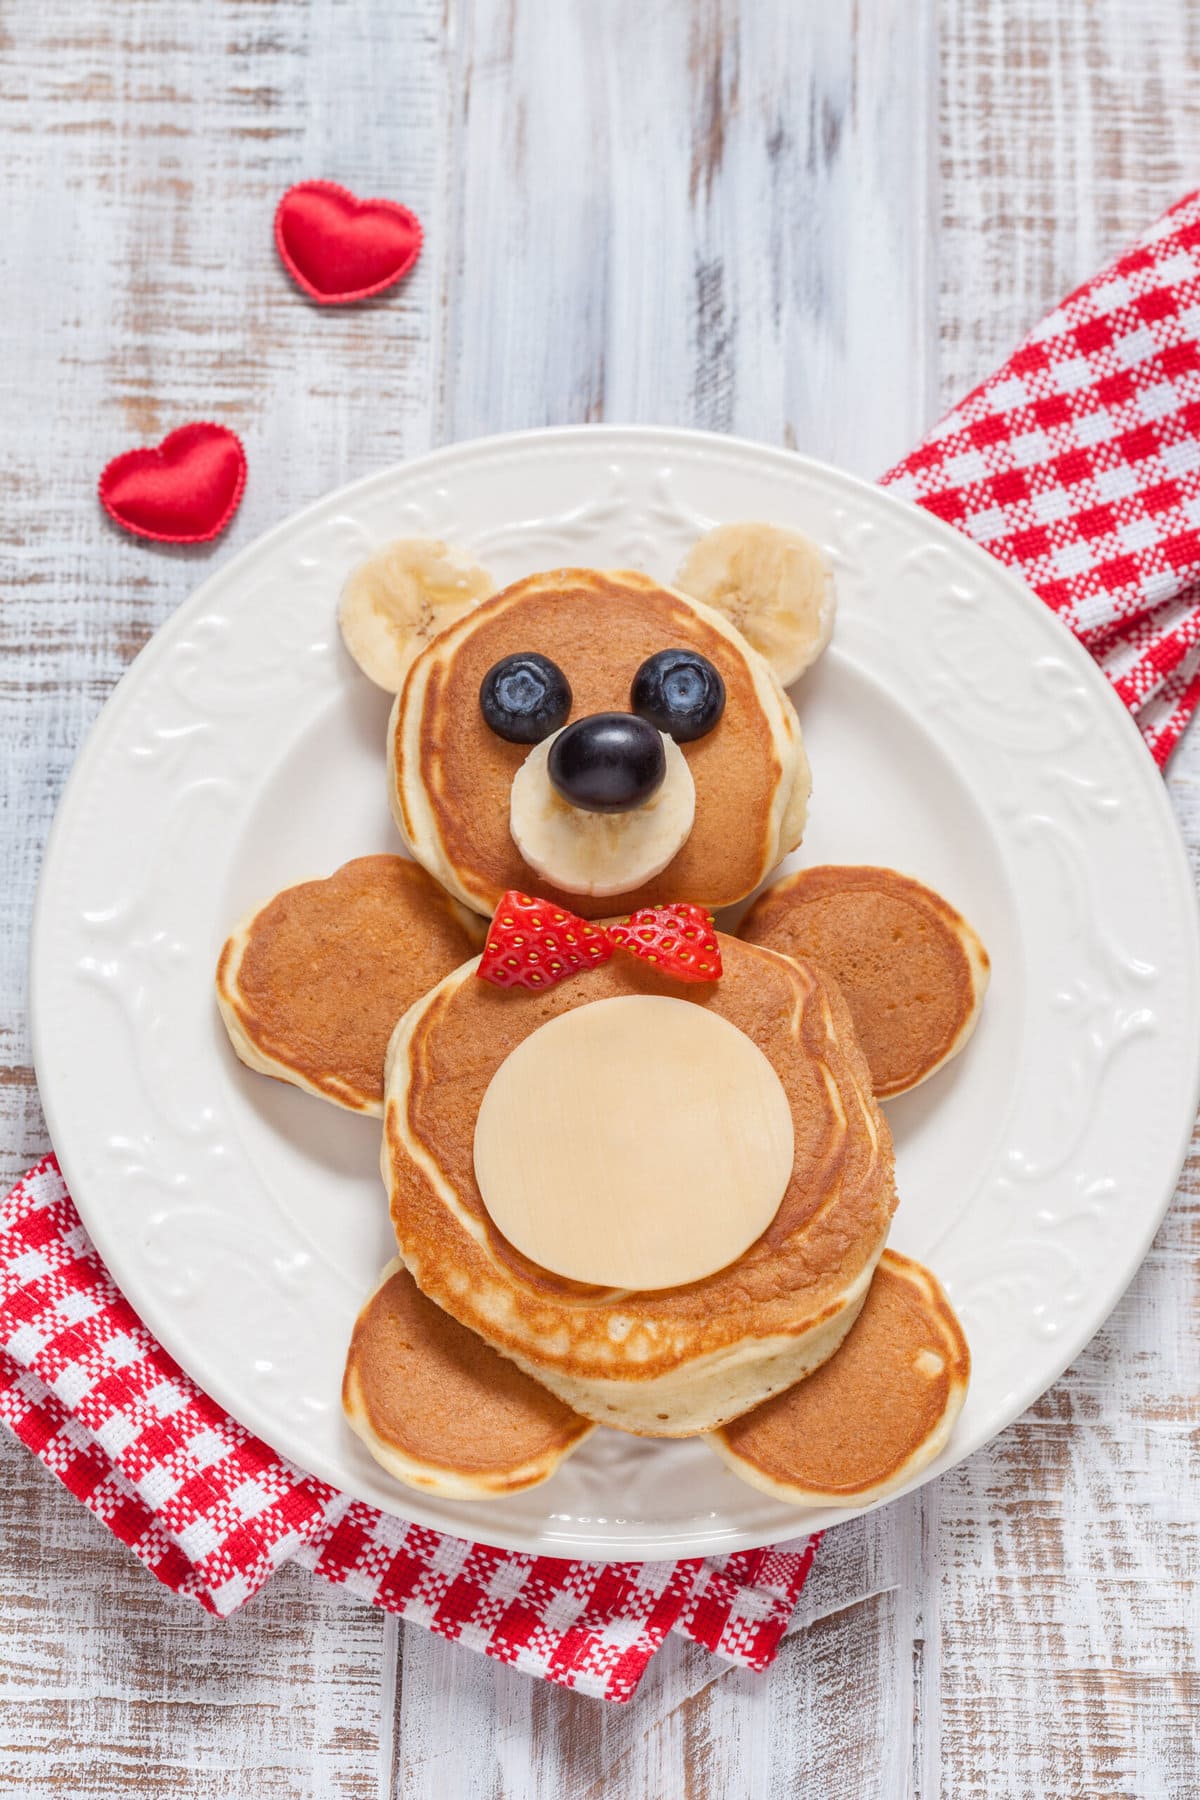 Teddy bear pancakes on a plate